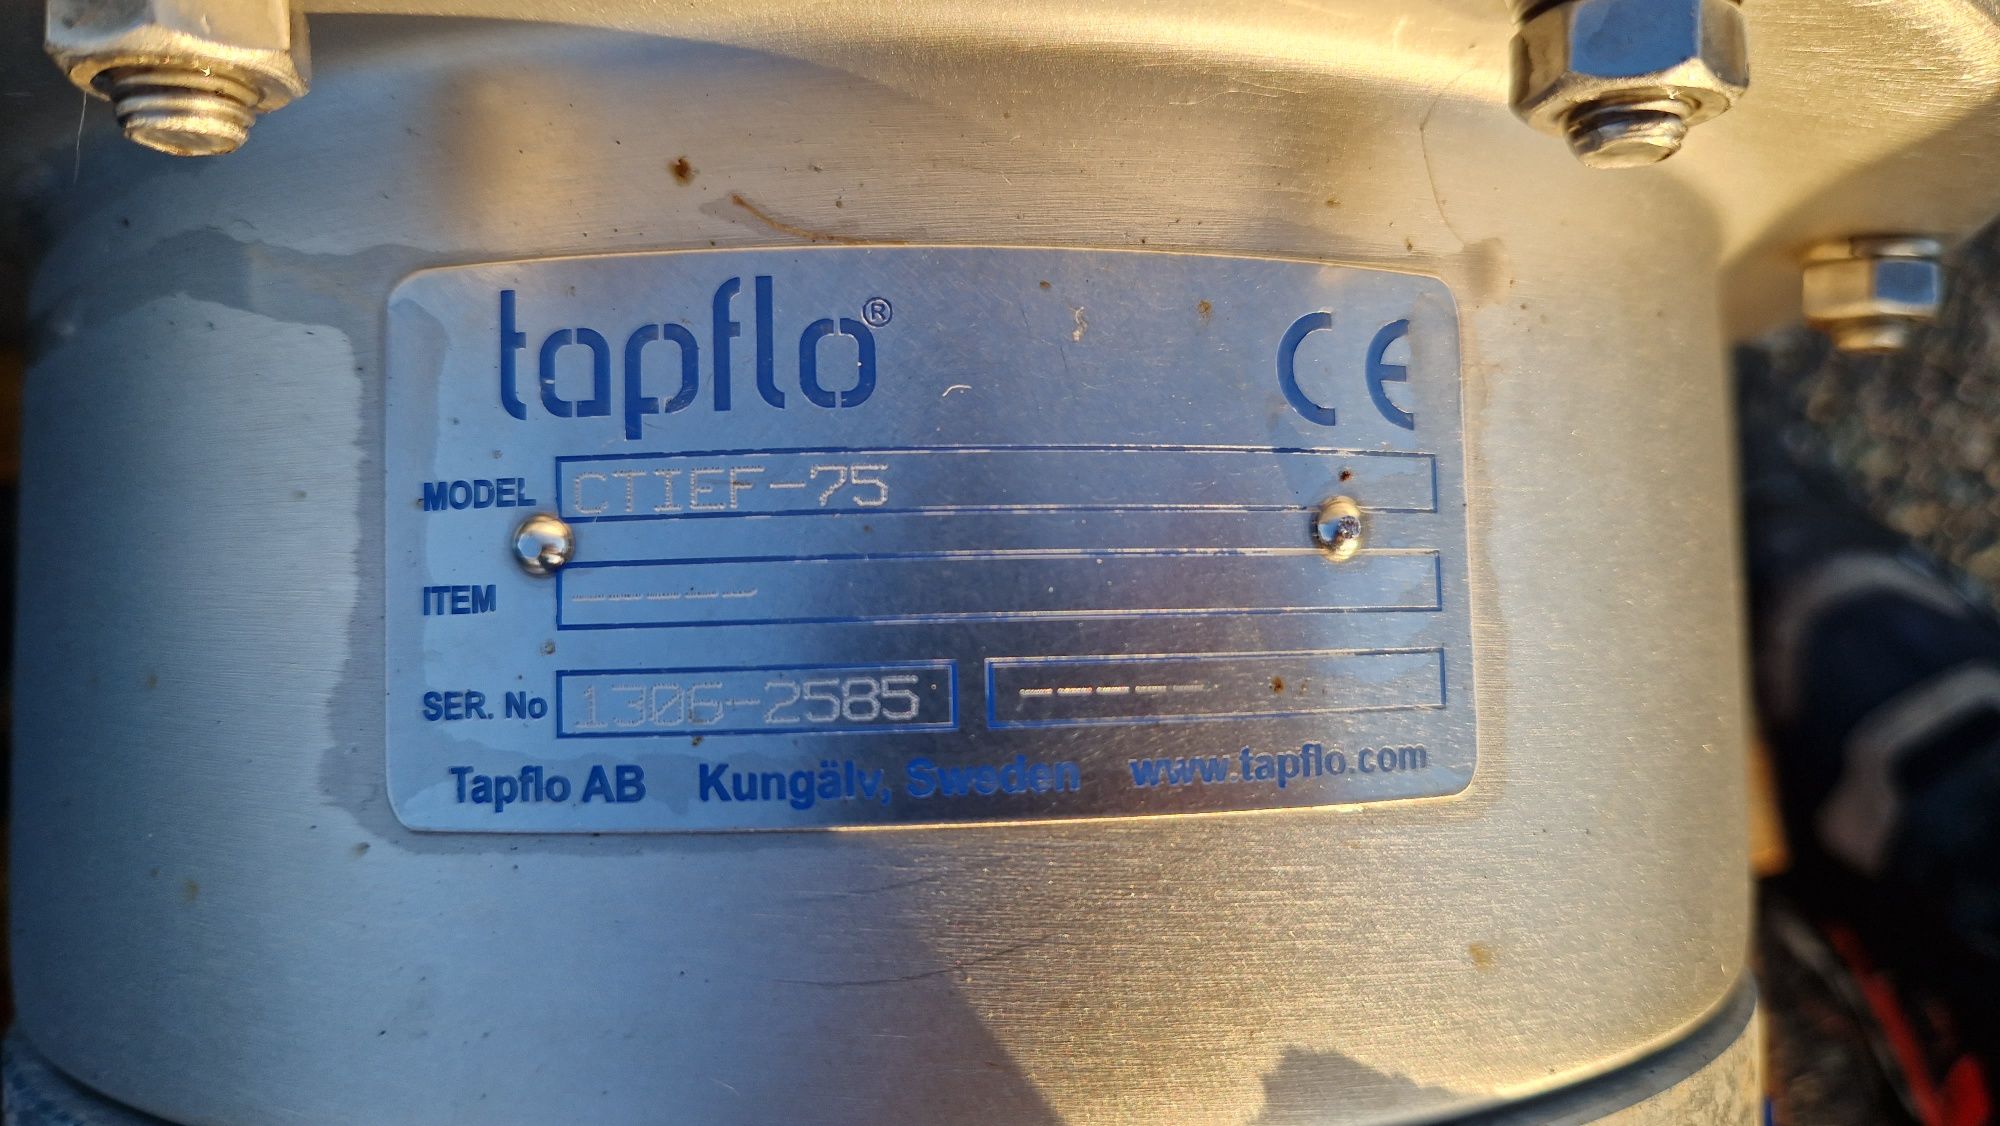 Pompa wirowa odśrodkowa do wody Tapflo ctief-75 1000l/min silnik 7.5kw